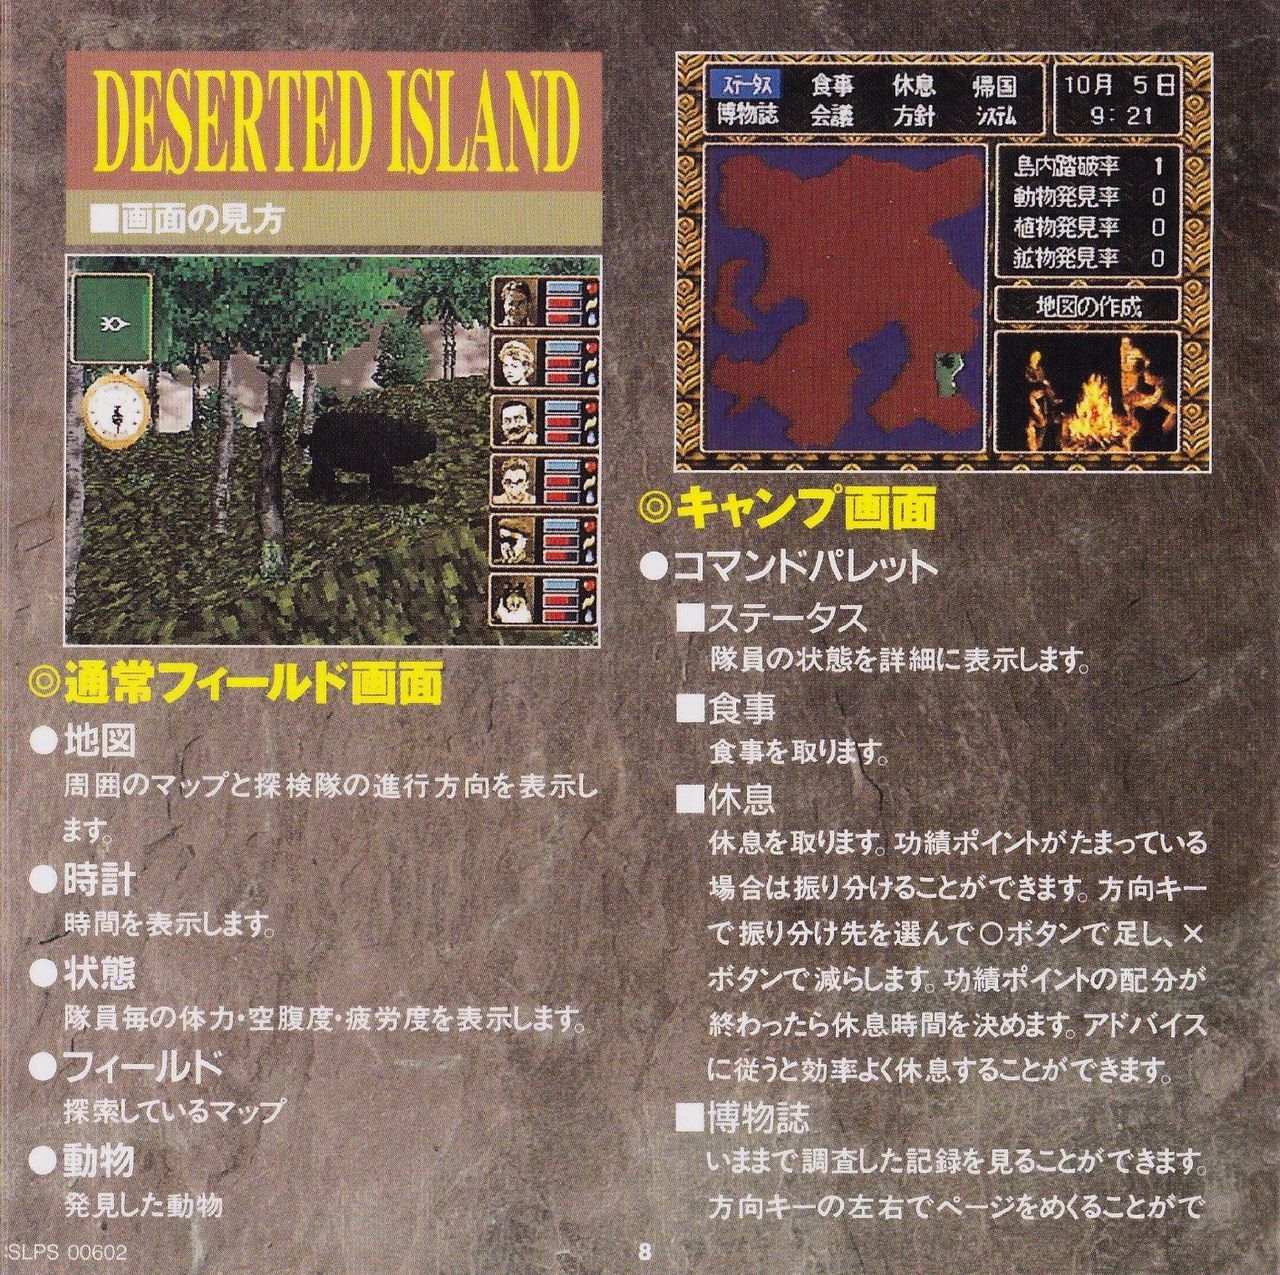 [KSS] Deserted Island - Manual 12